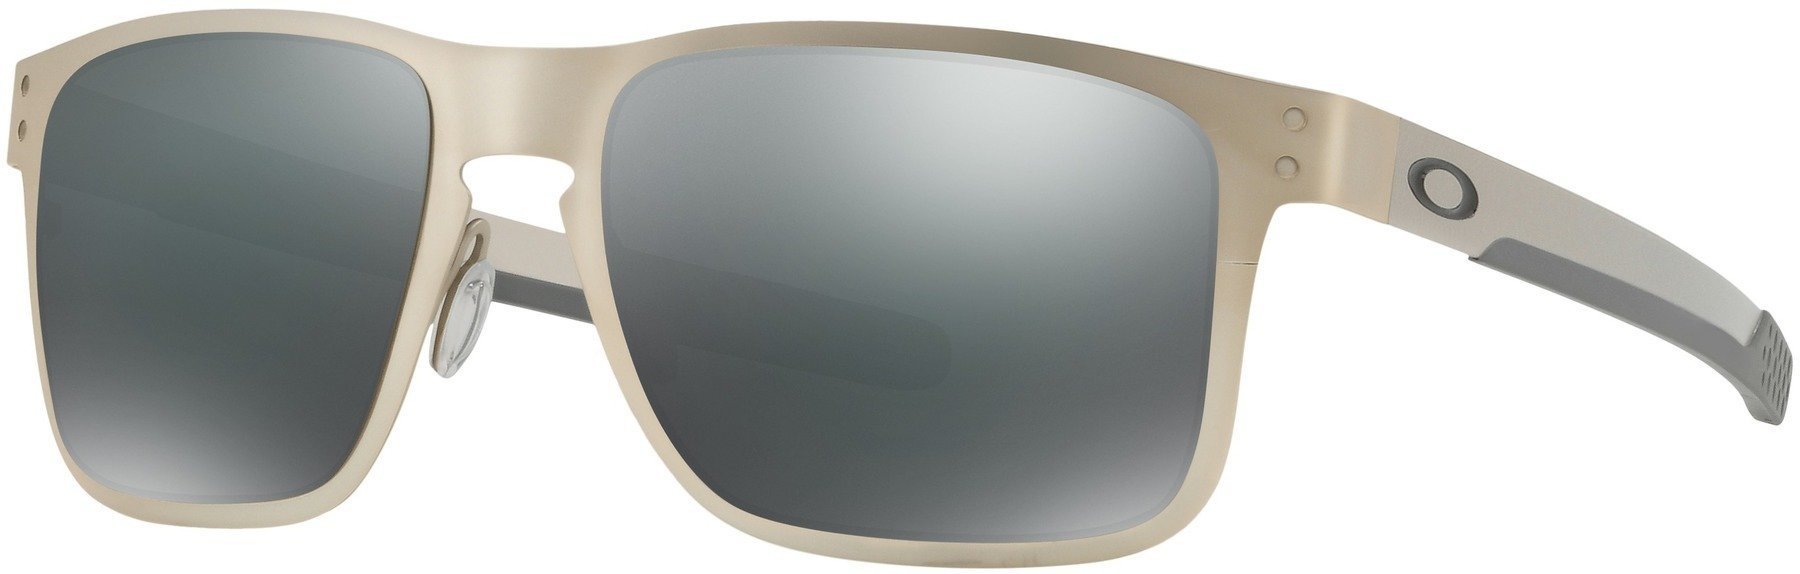 Életmód szemüveg Oakley Holbrook Metal Satin Chrome / Black Iridium